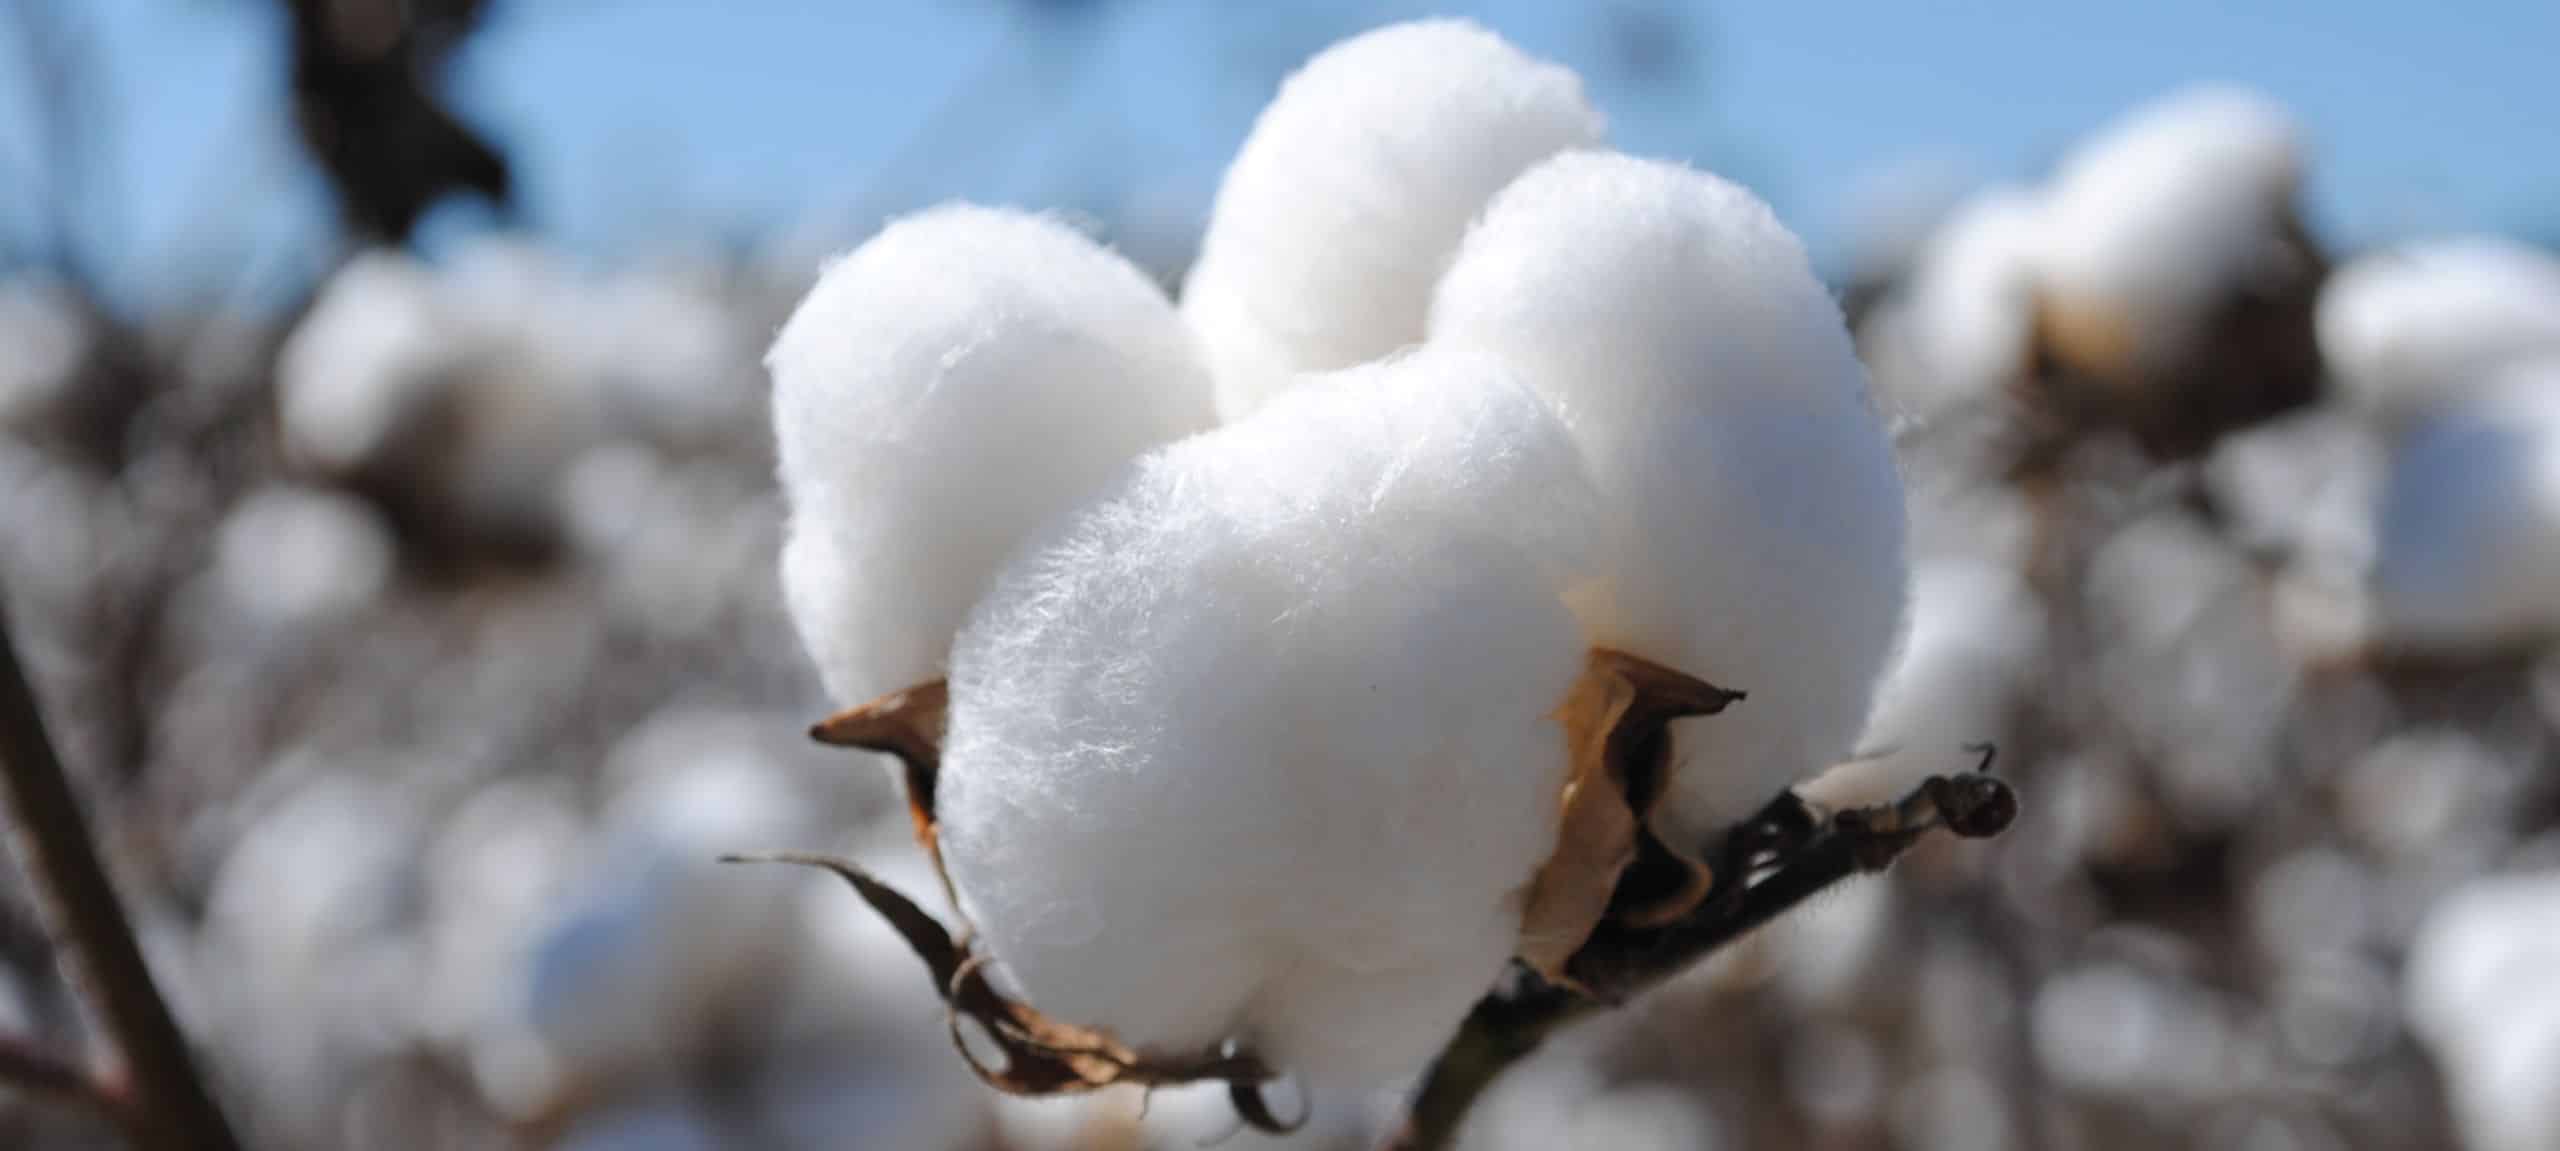 Pourquoi faut-il privilégier le coton bio au coton conventionnel ?